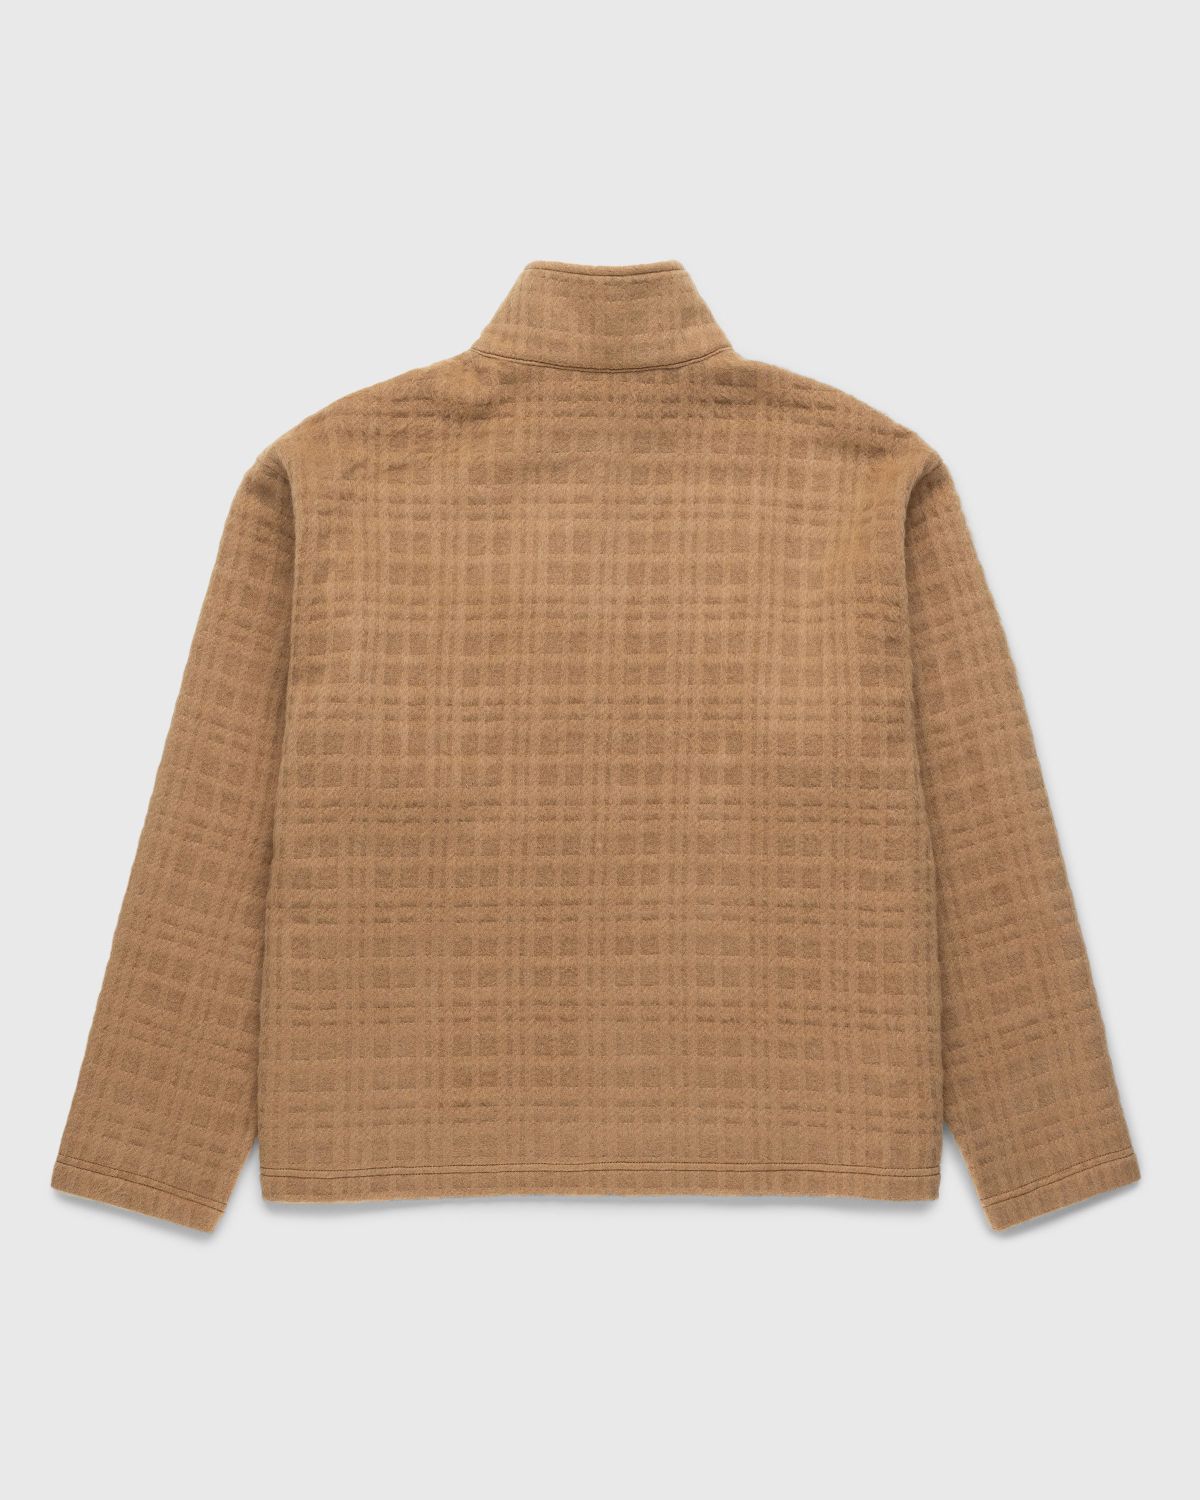 Highsnobiety HS05 – Recycled Half-Zip Wool Fleece Brown - Knitwear - Brown - Image 2